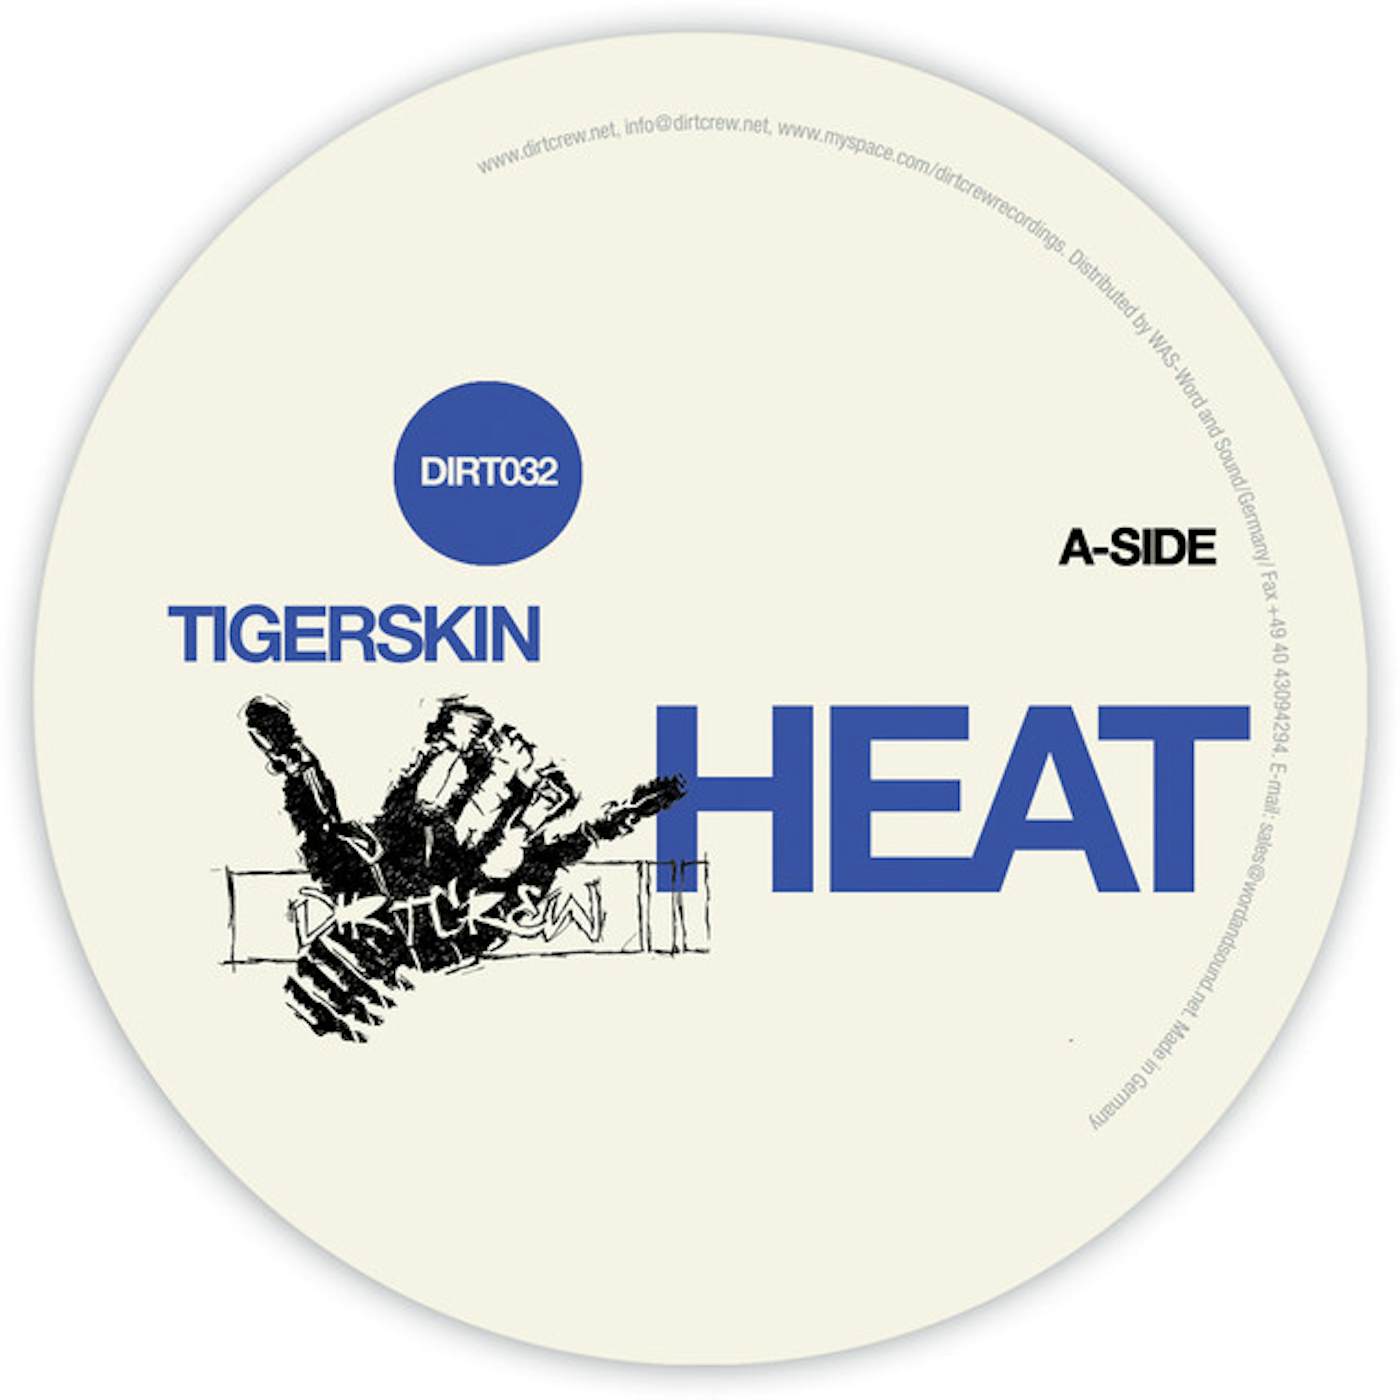 Tigerskin Heat Vinyl Record